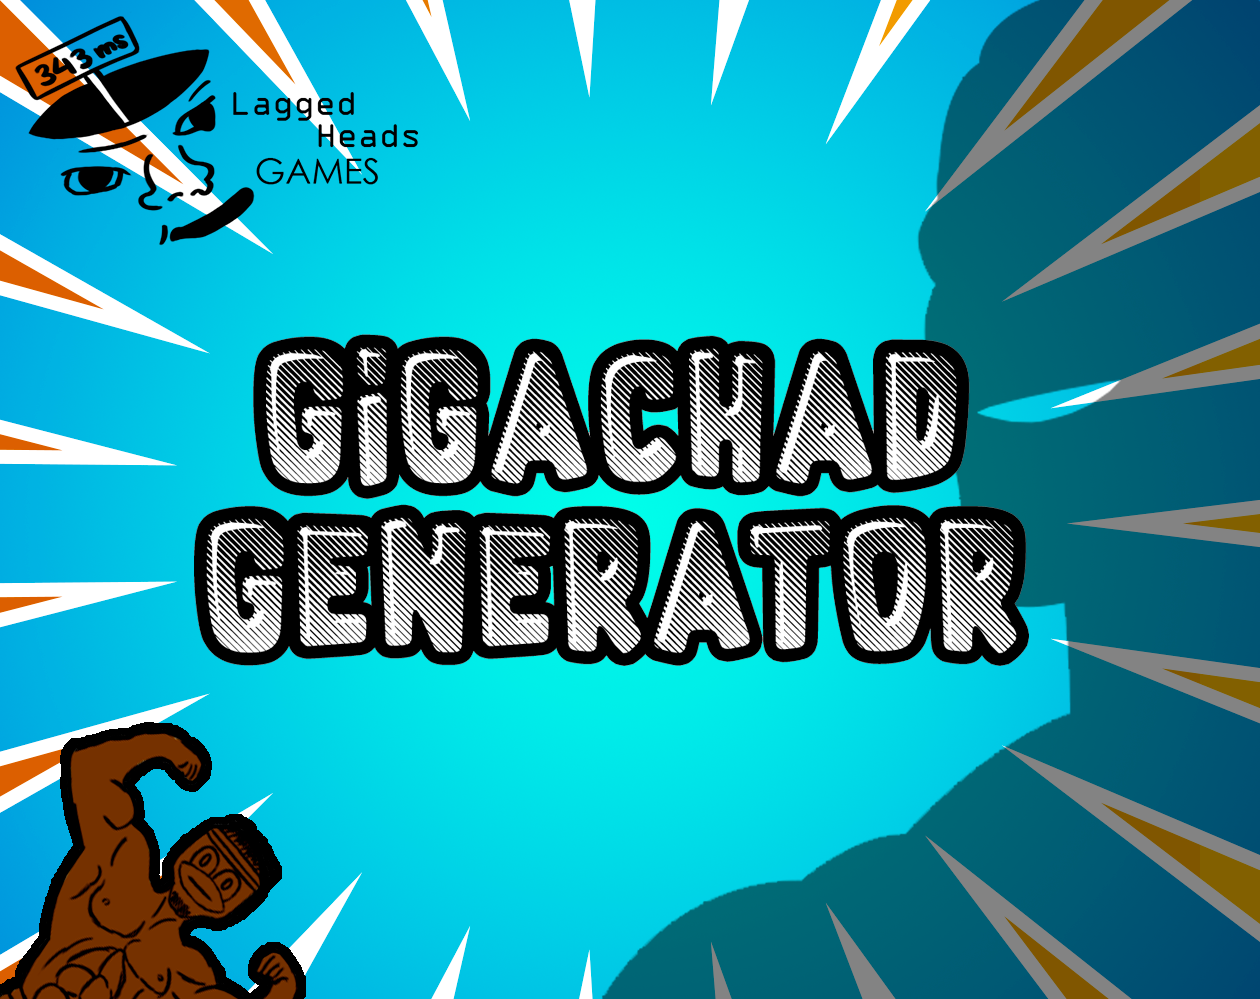 GigaChad #5 - GigaChad